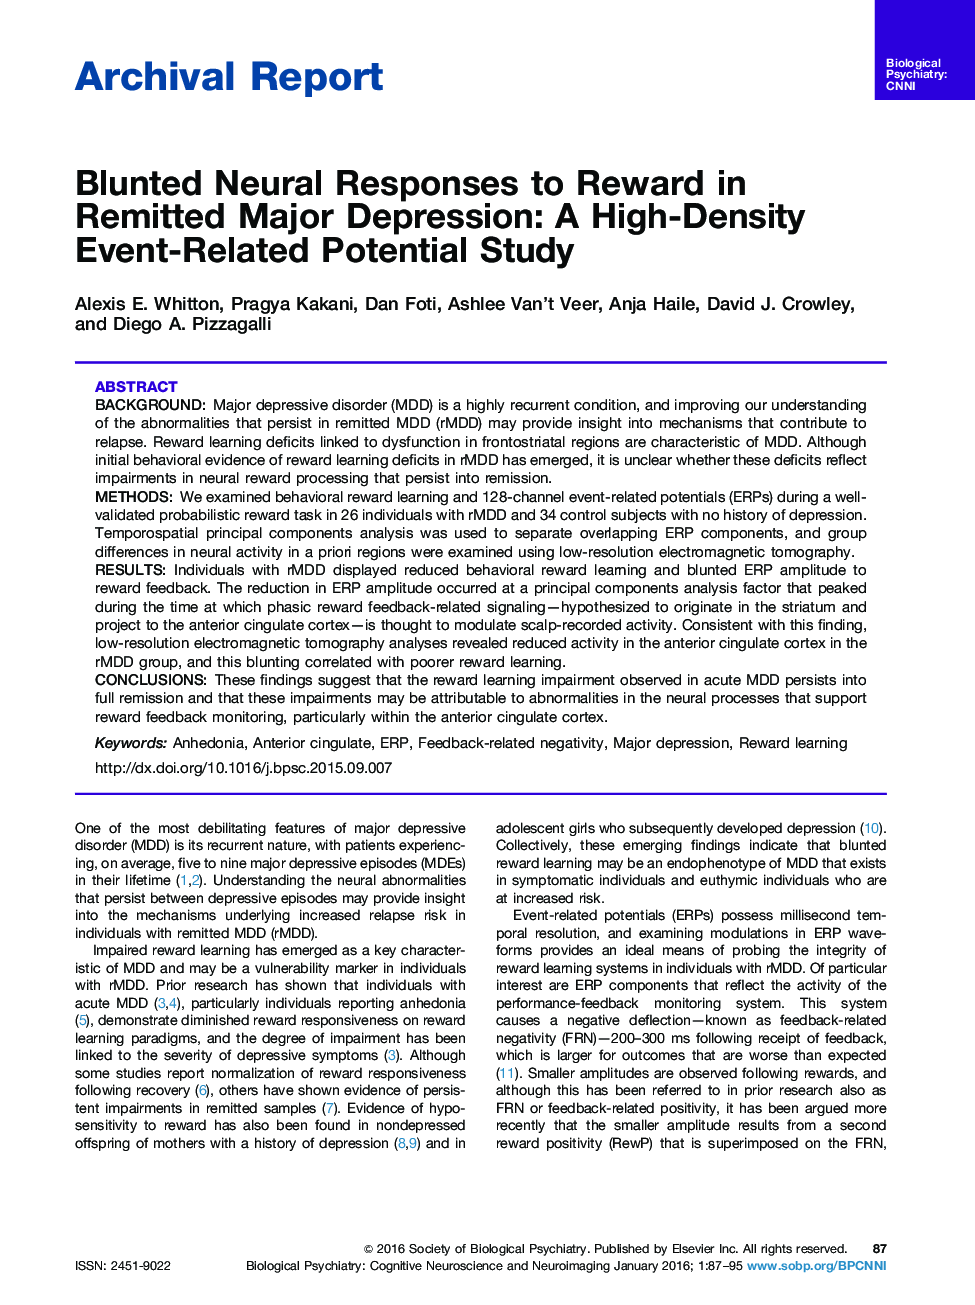 پاسخ های عصبی ملایم به پاداش در معرض افسردگی شدید: یک مطالعه بالقوه مرتبط با رویداد با شدت بالا 